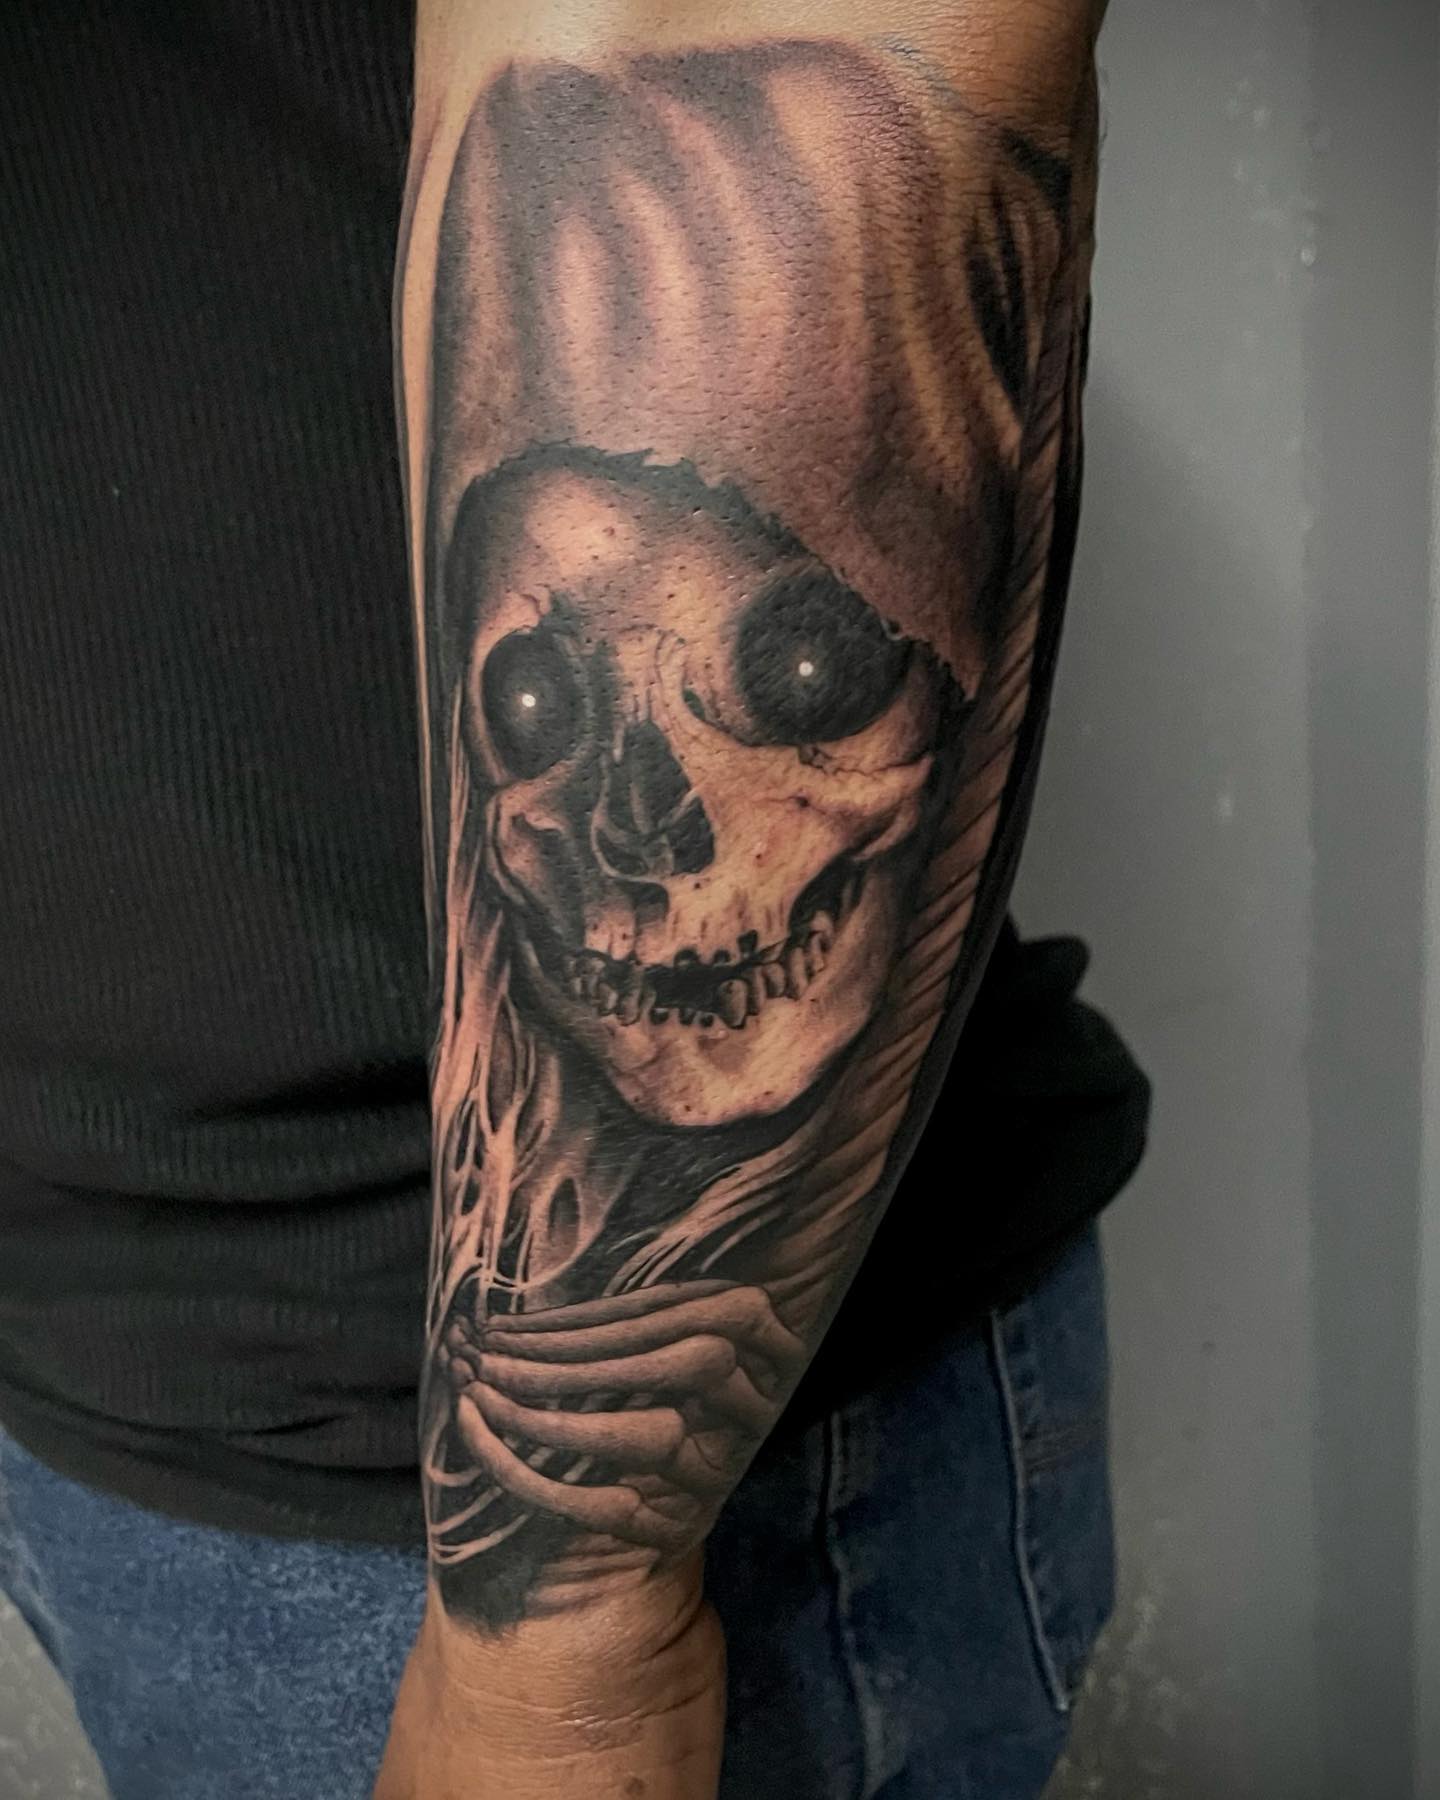 Tatuaje de la Santa Muerte en el brazo.